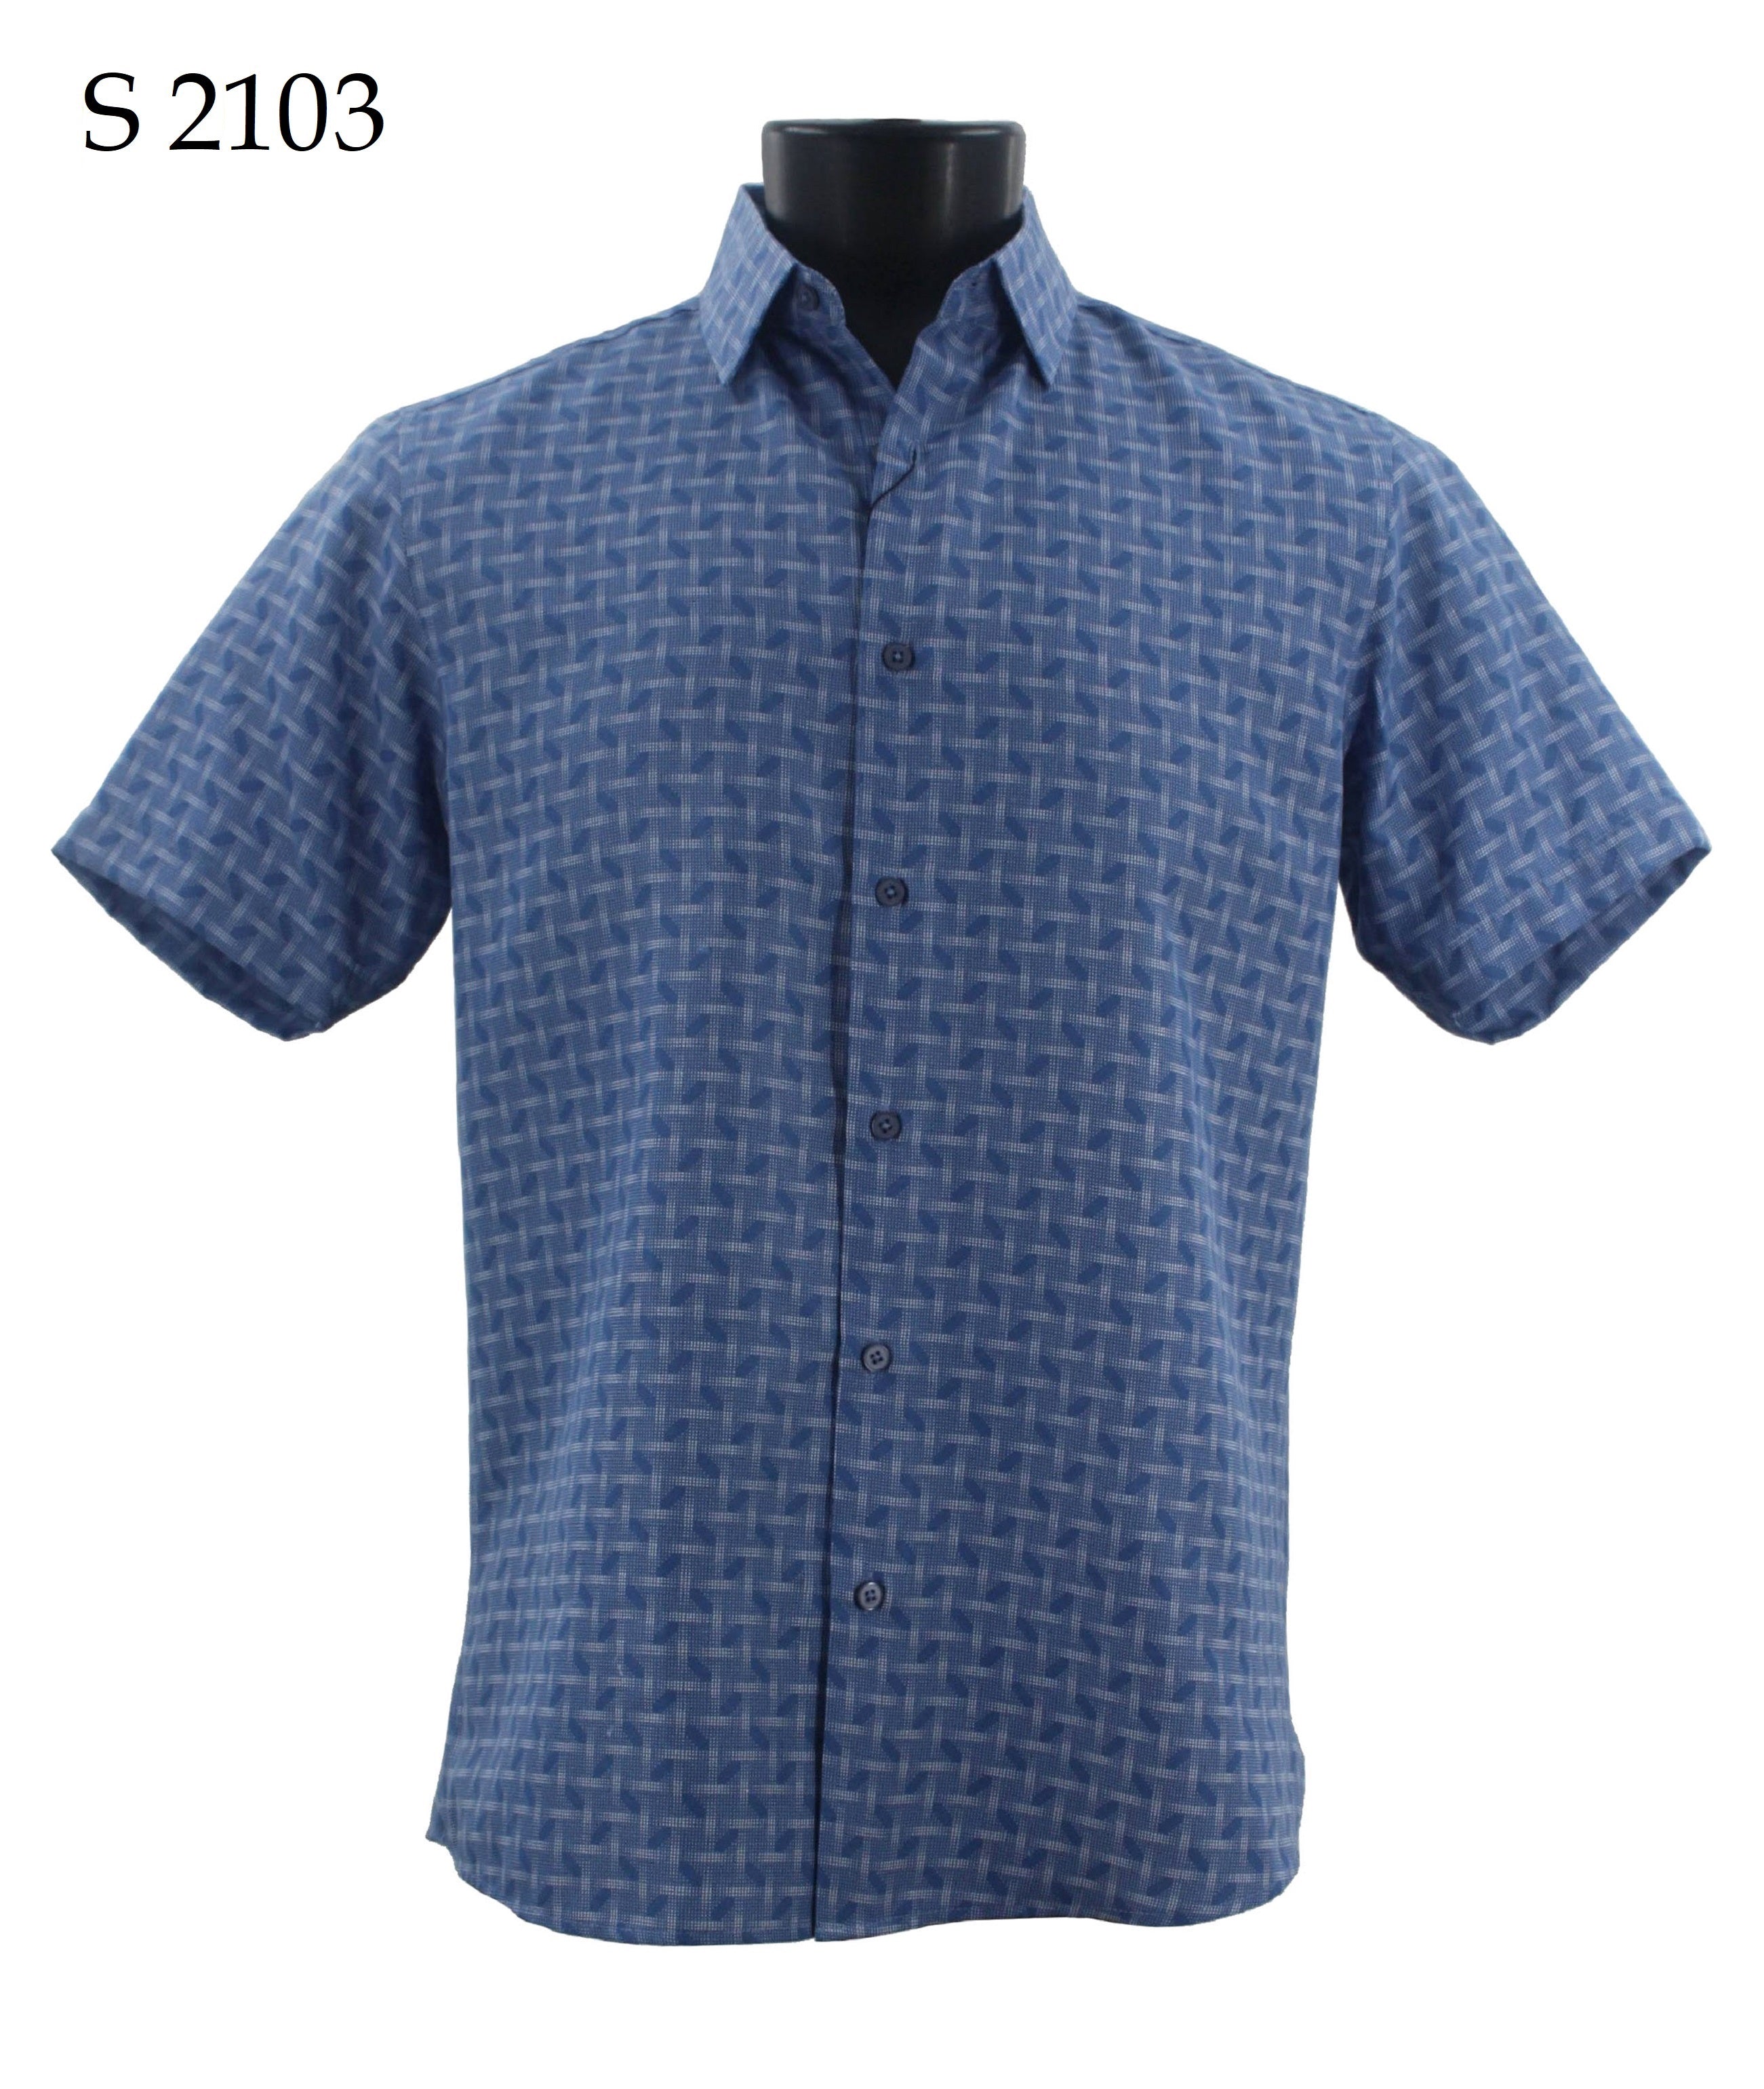 Sangi Short Sleeve Shirt S 2103